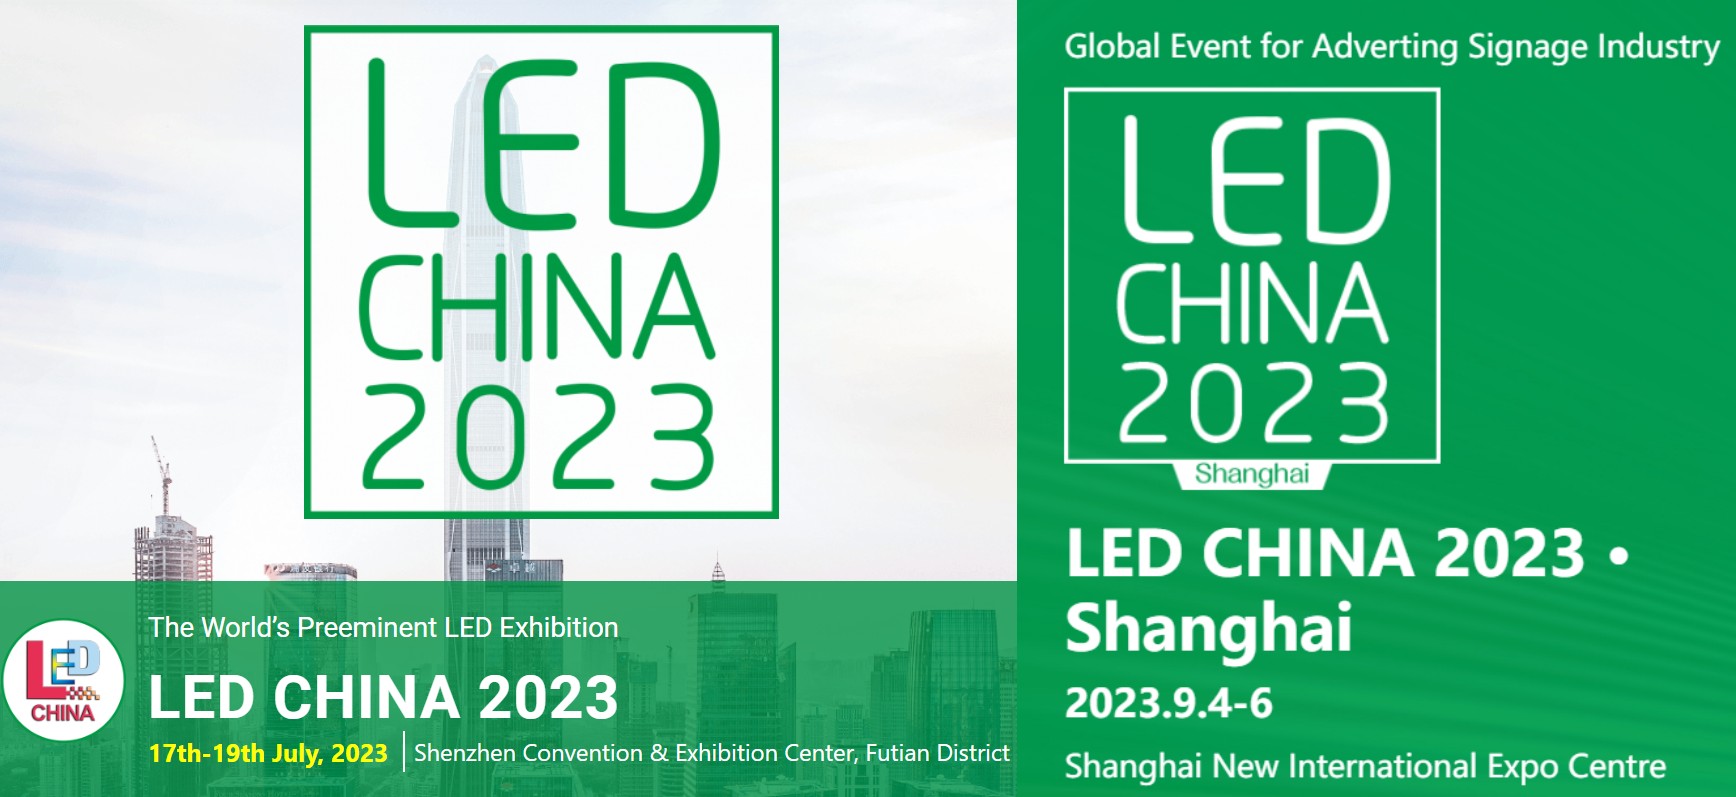 4-LED CHINA 2023 exhibition